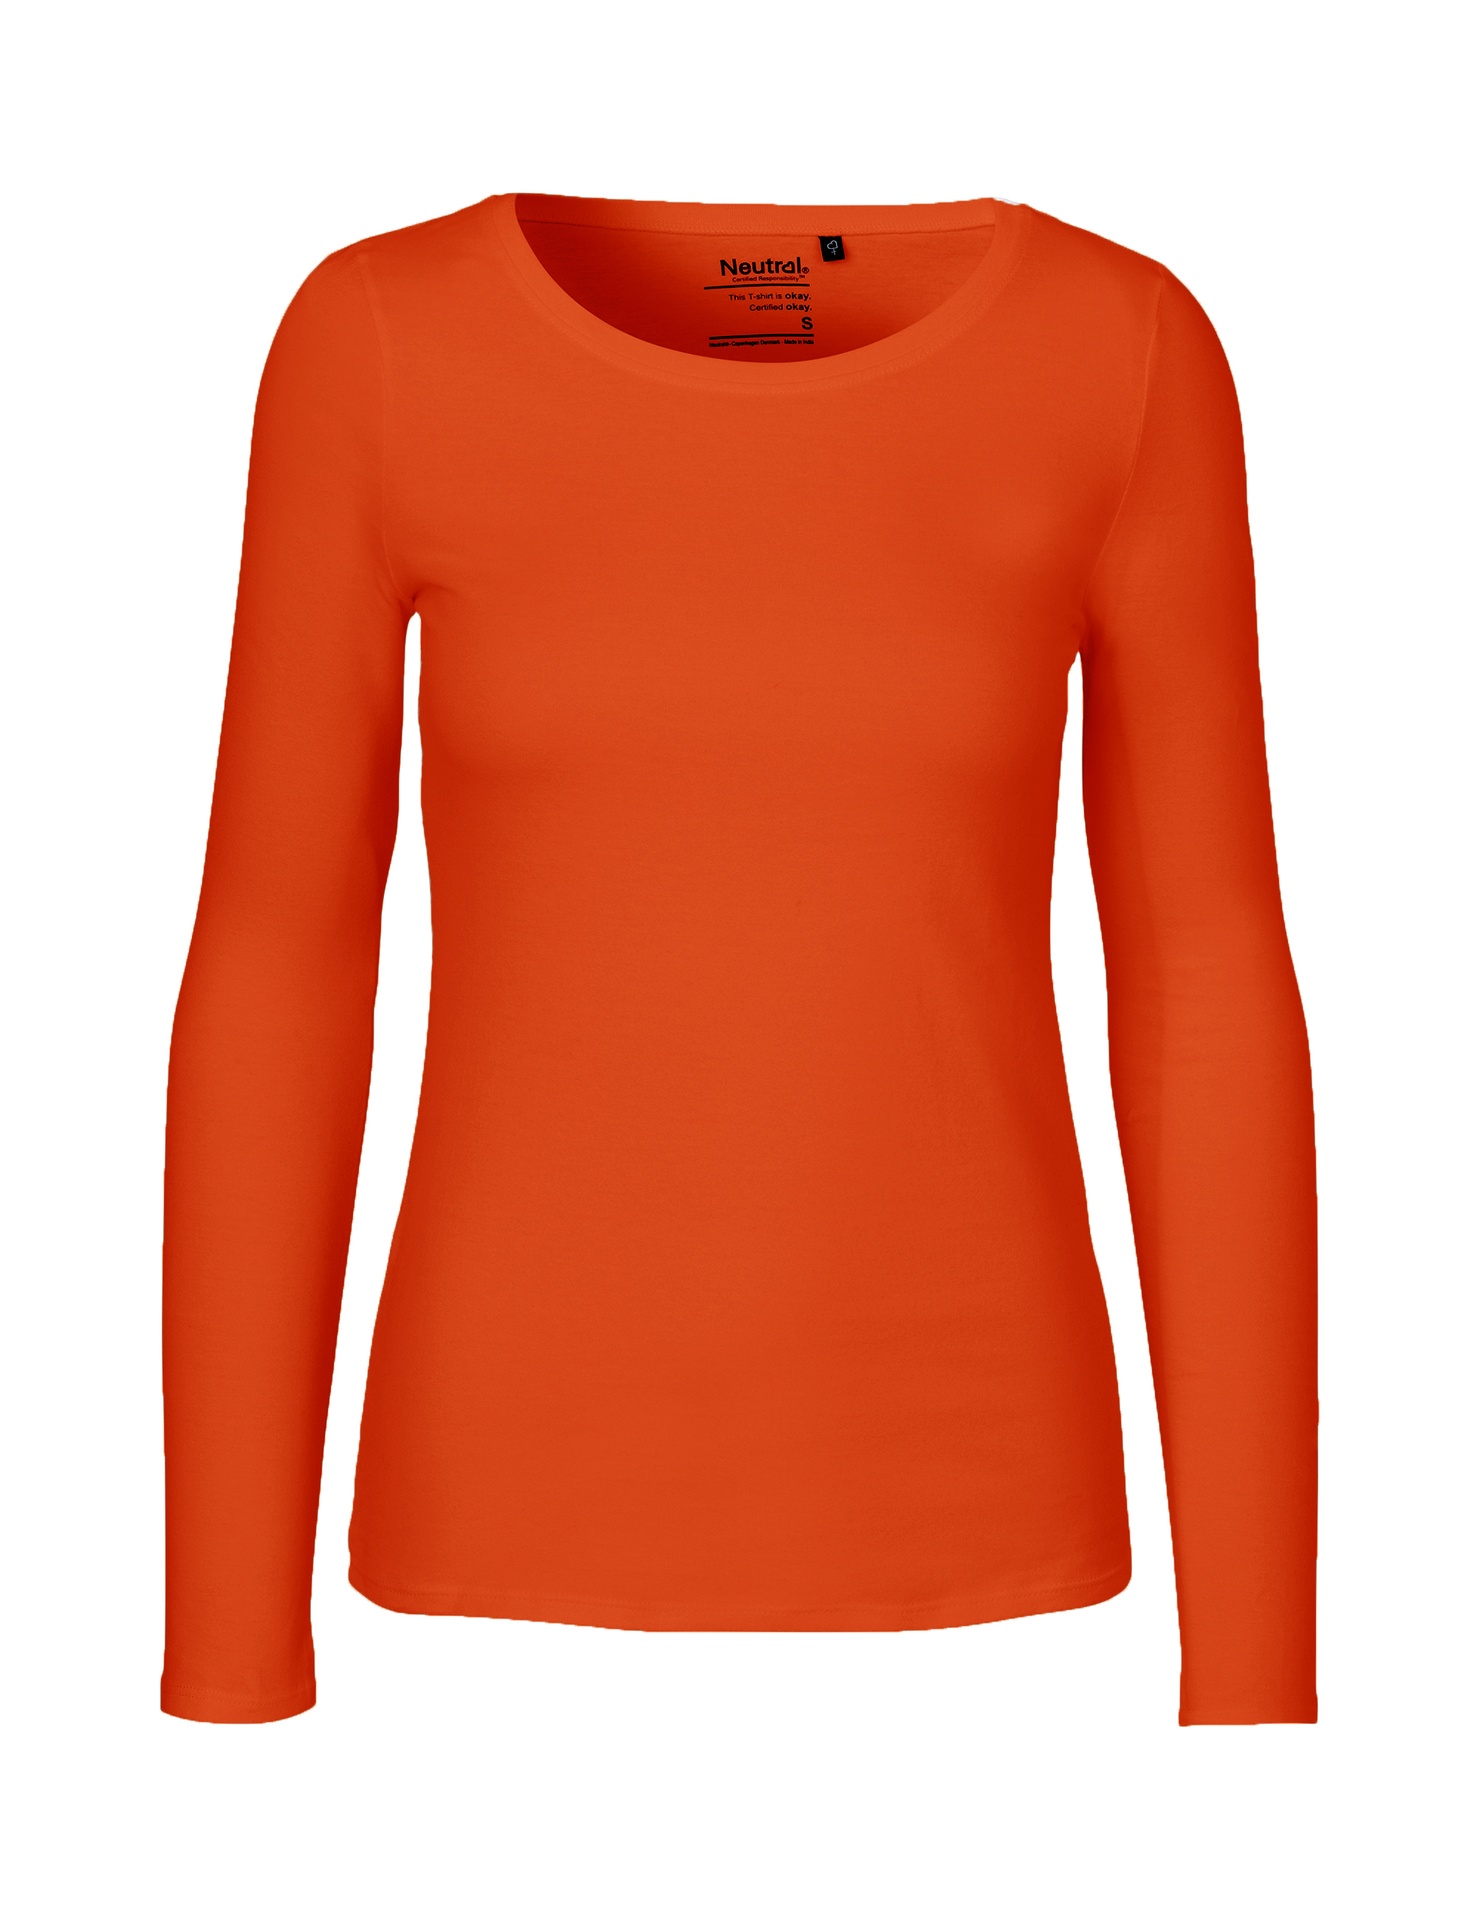 [PR/04722] Ladies Long Sleeve T-Shirt (Orange 30, 2XL)